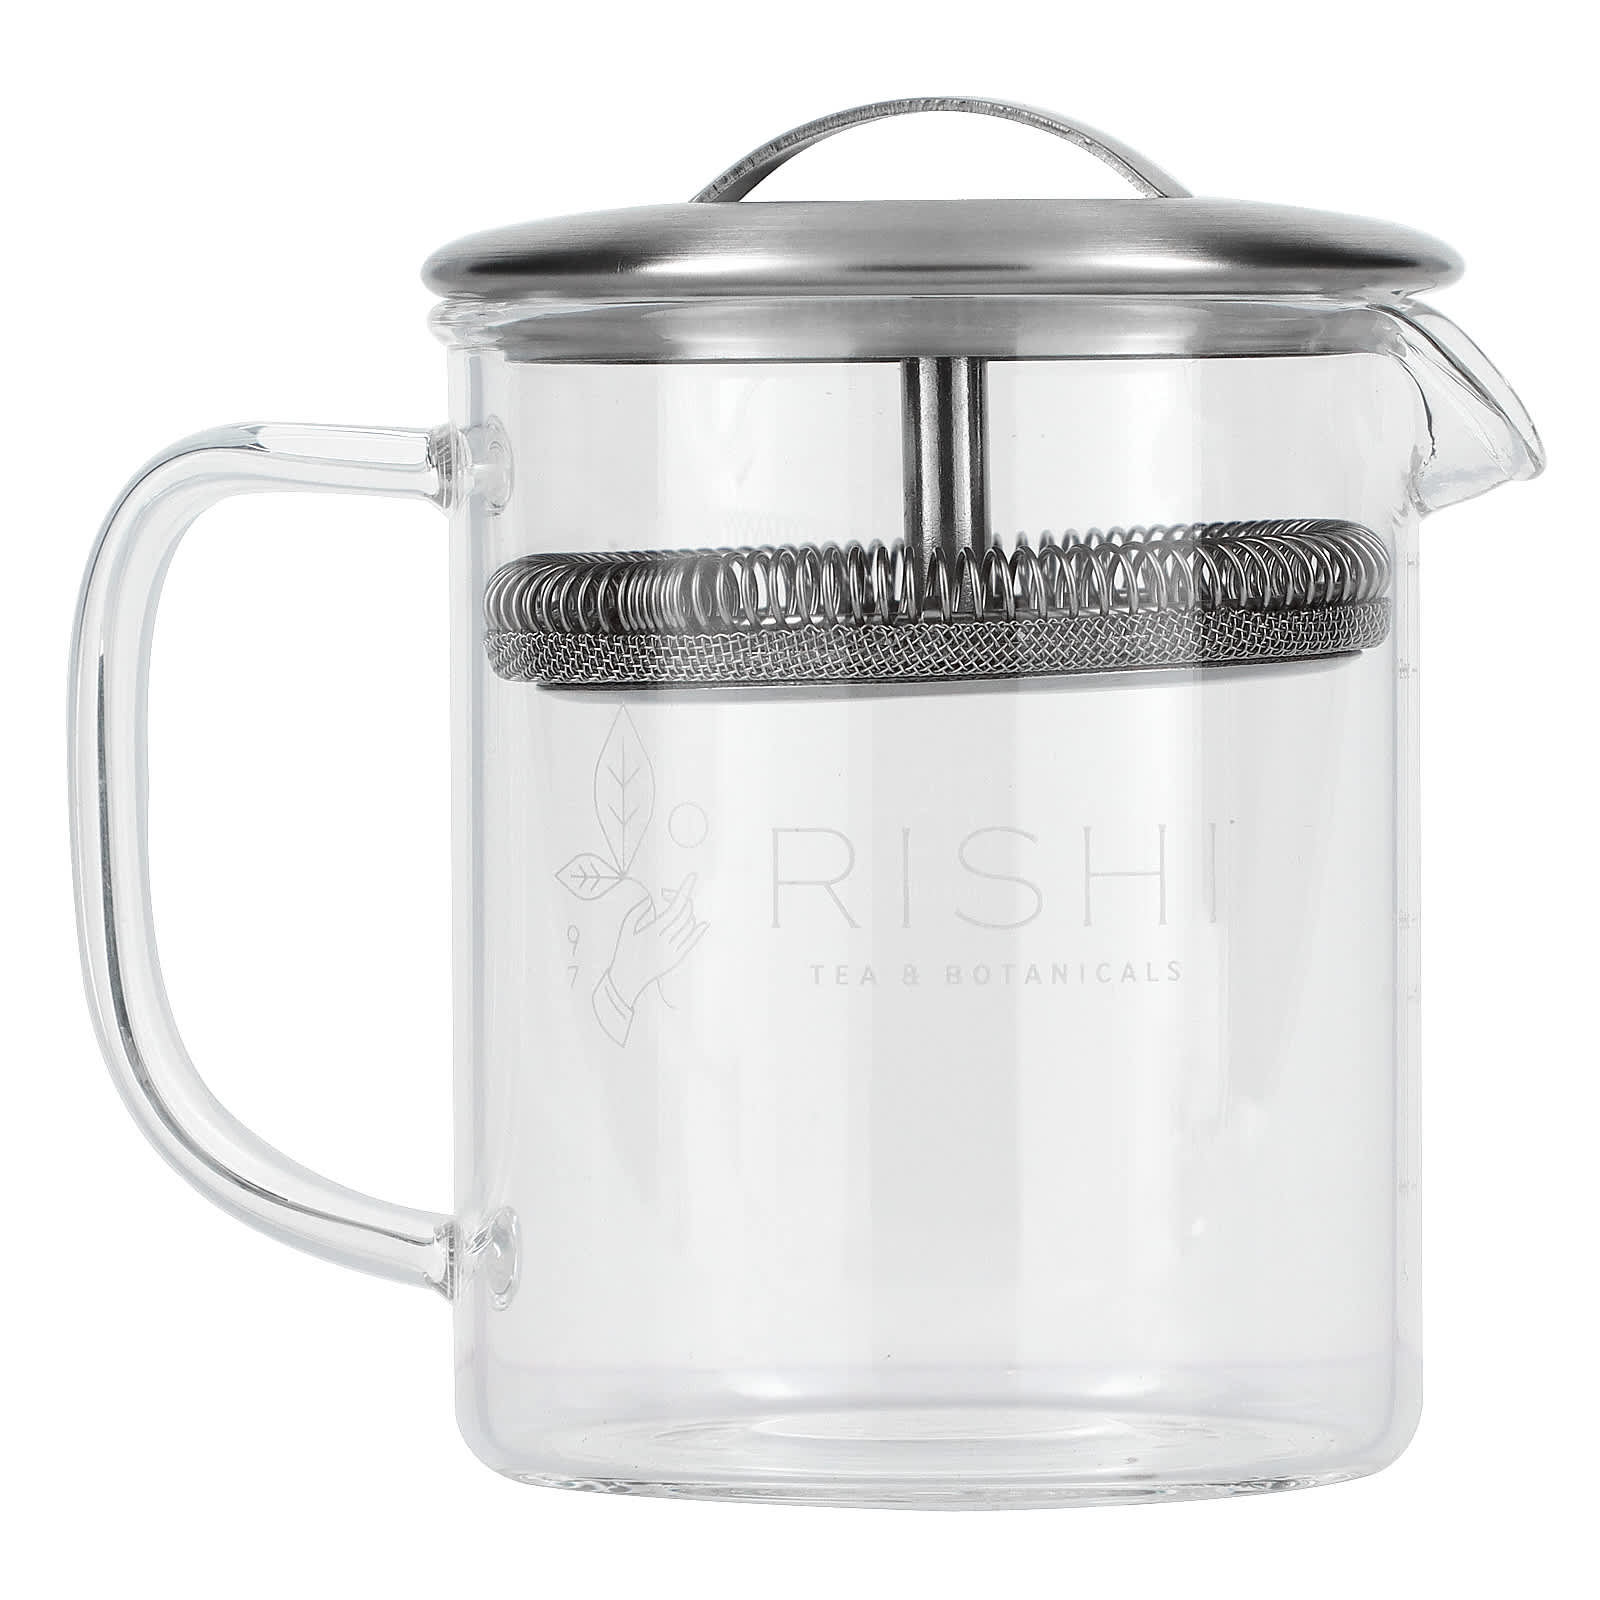 2367円 NEW売り切れる前に☆ Tea Brew No. 2 100-Piece Single Use Filter Two 3-Cup Pot Size by To A